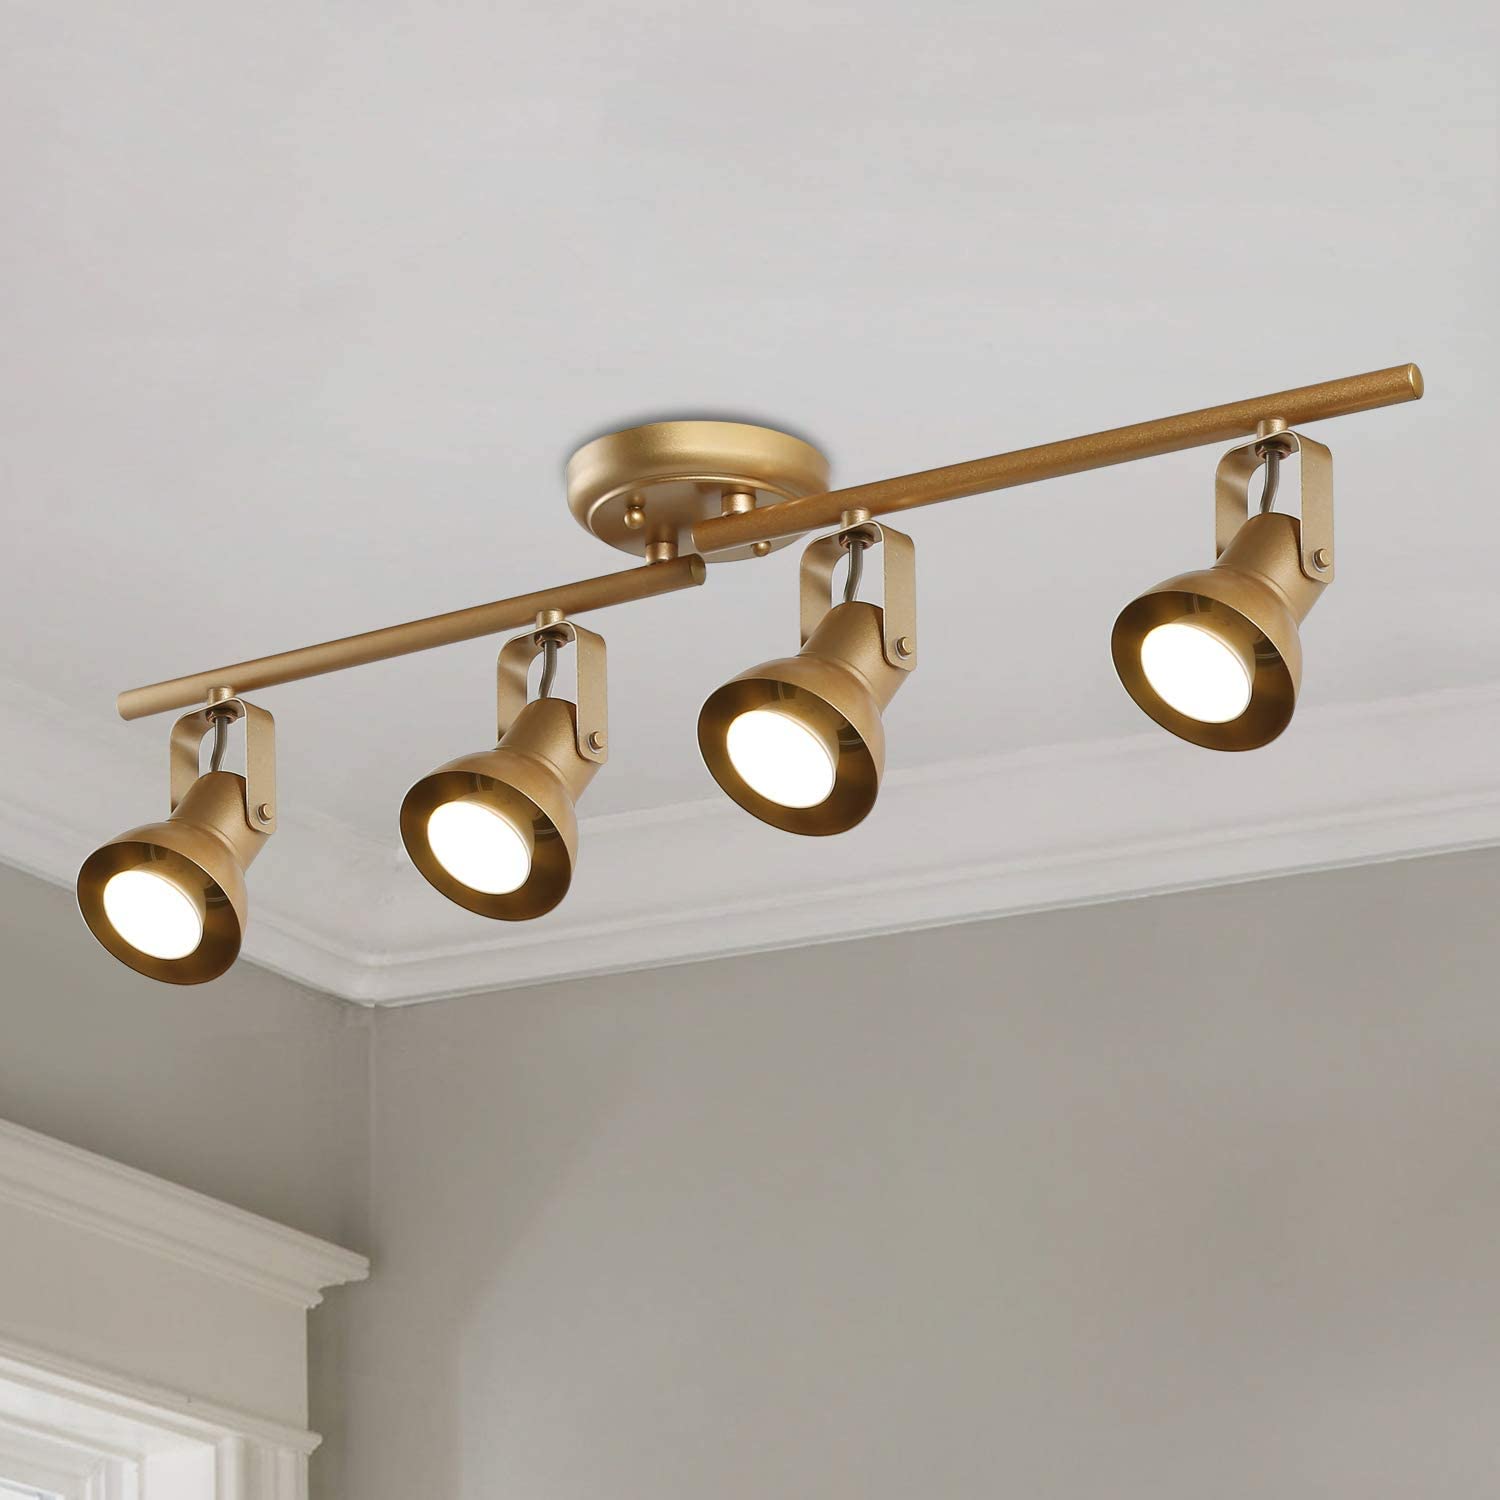 KSANA Gold LED Track Lighting Fixture 4 Heads Adjustable Modern Ceiling Spotlight for Kitchen, Living Room